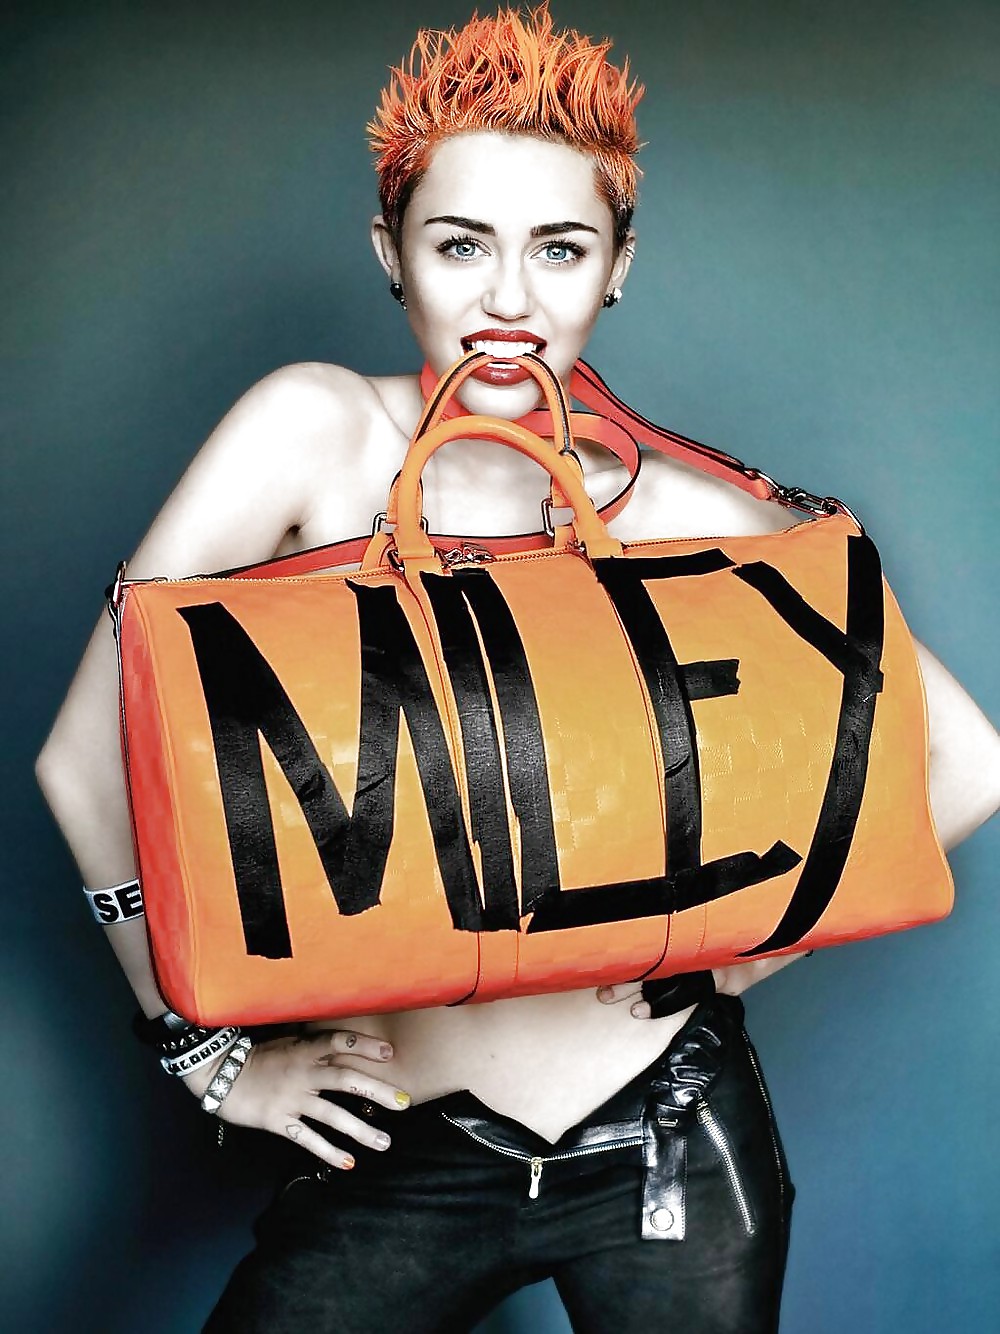 Miley Cyrus Hot Body Körper Für V-Magazin Der Arbeit #37027644